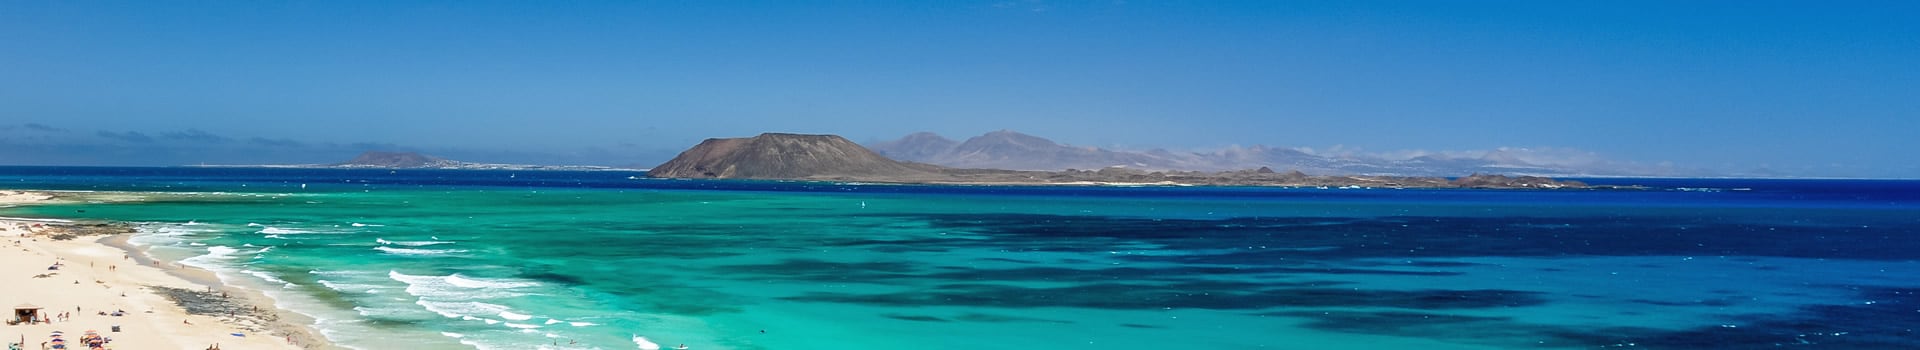 Biglietti da Nave da Playa Blanca (Lanzarote) a Corralejo (Fuerteventura)